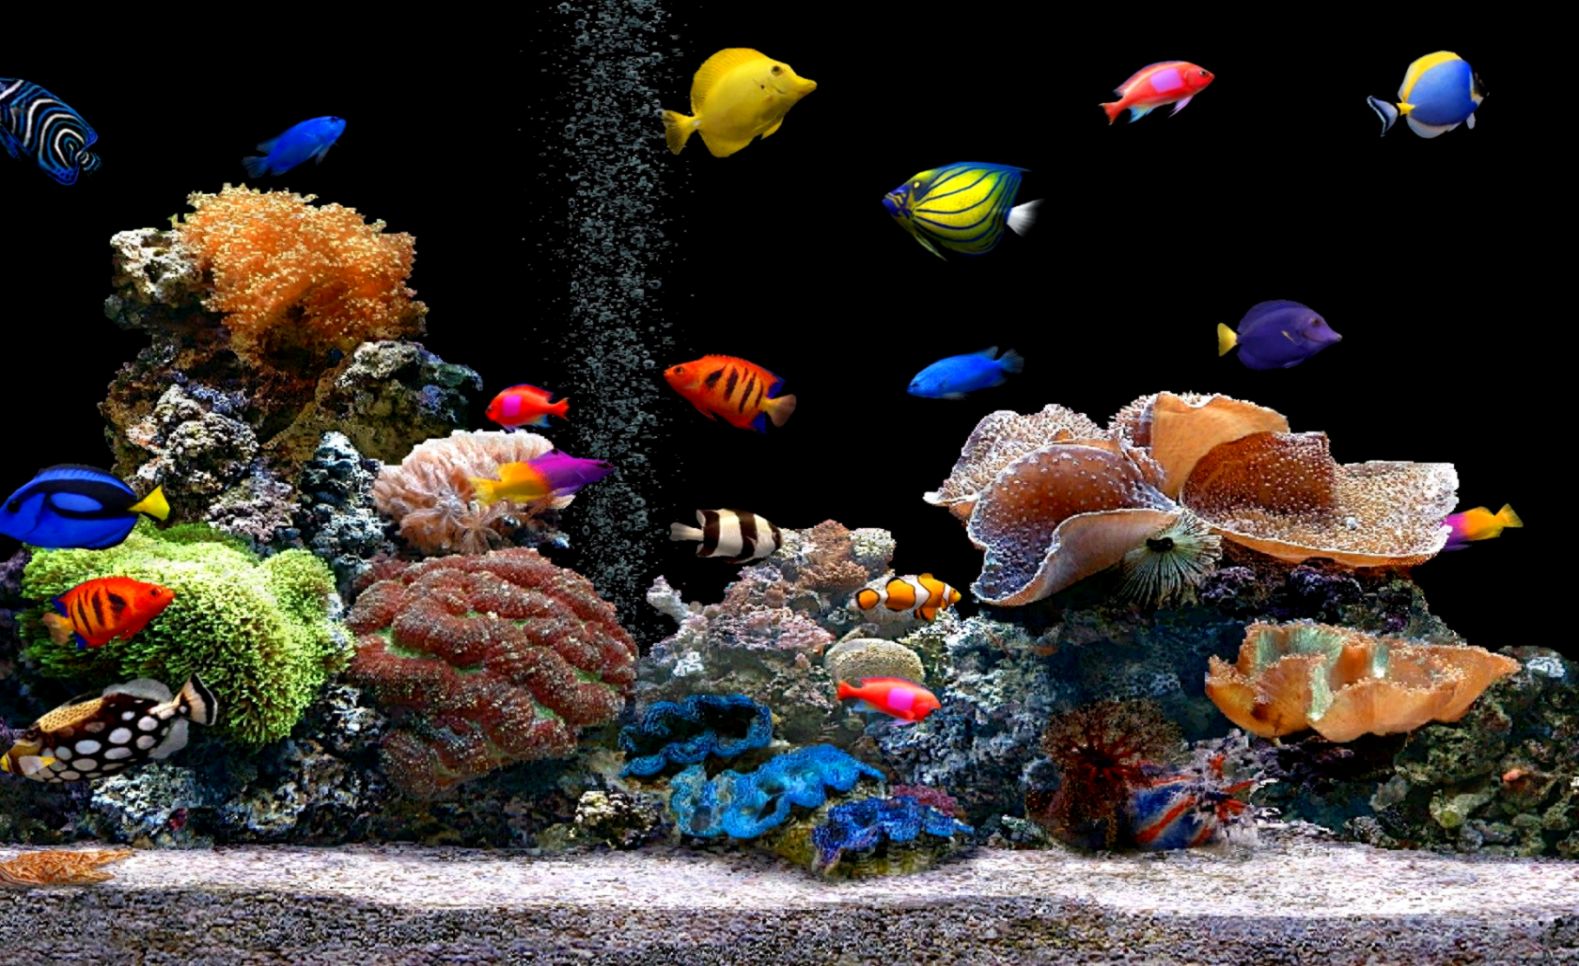 Free Download Live Hd Wallpaper Fish Aquarium 3d Desktop - Live Wallpaper Hd  Free Download - 1579x966 Wallpaper 